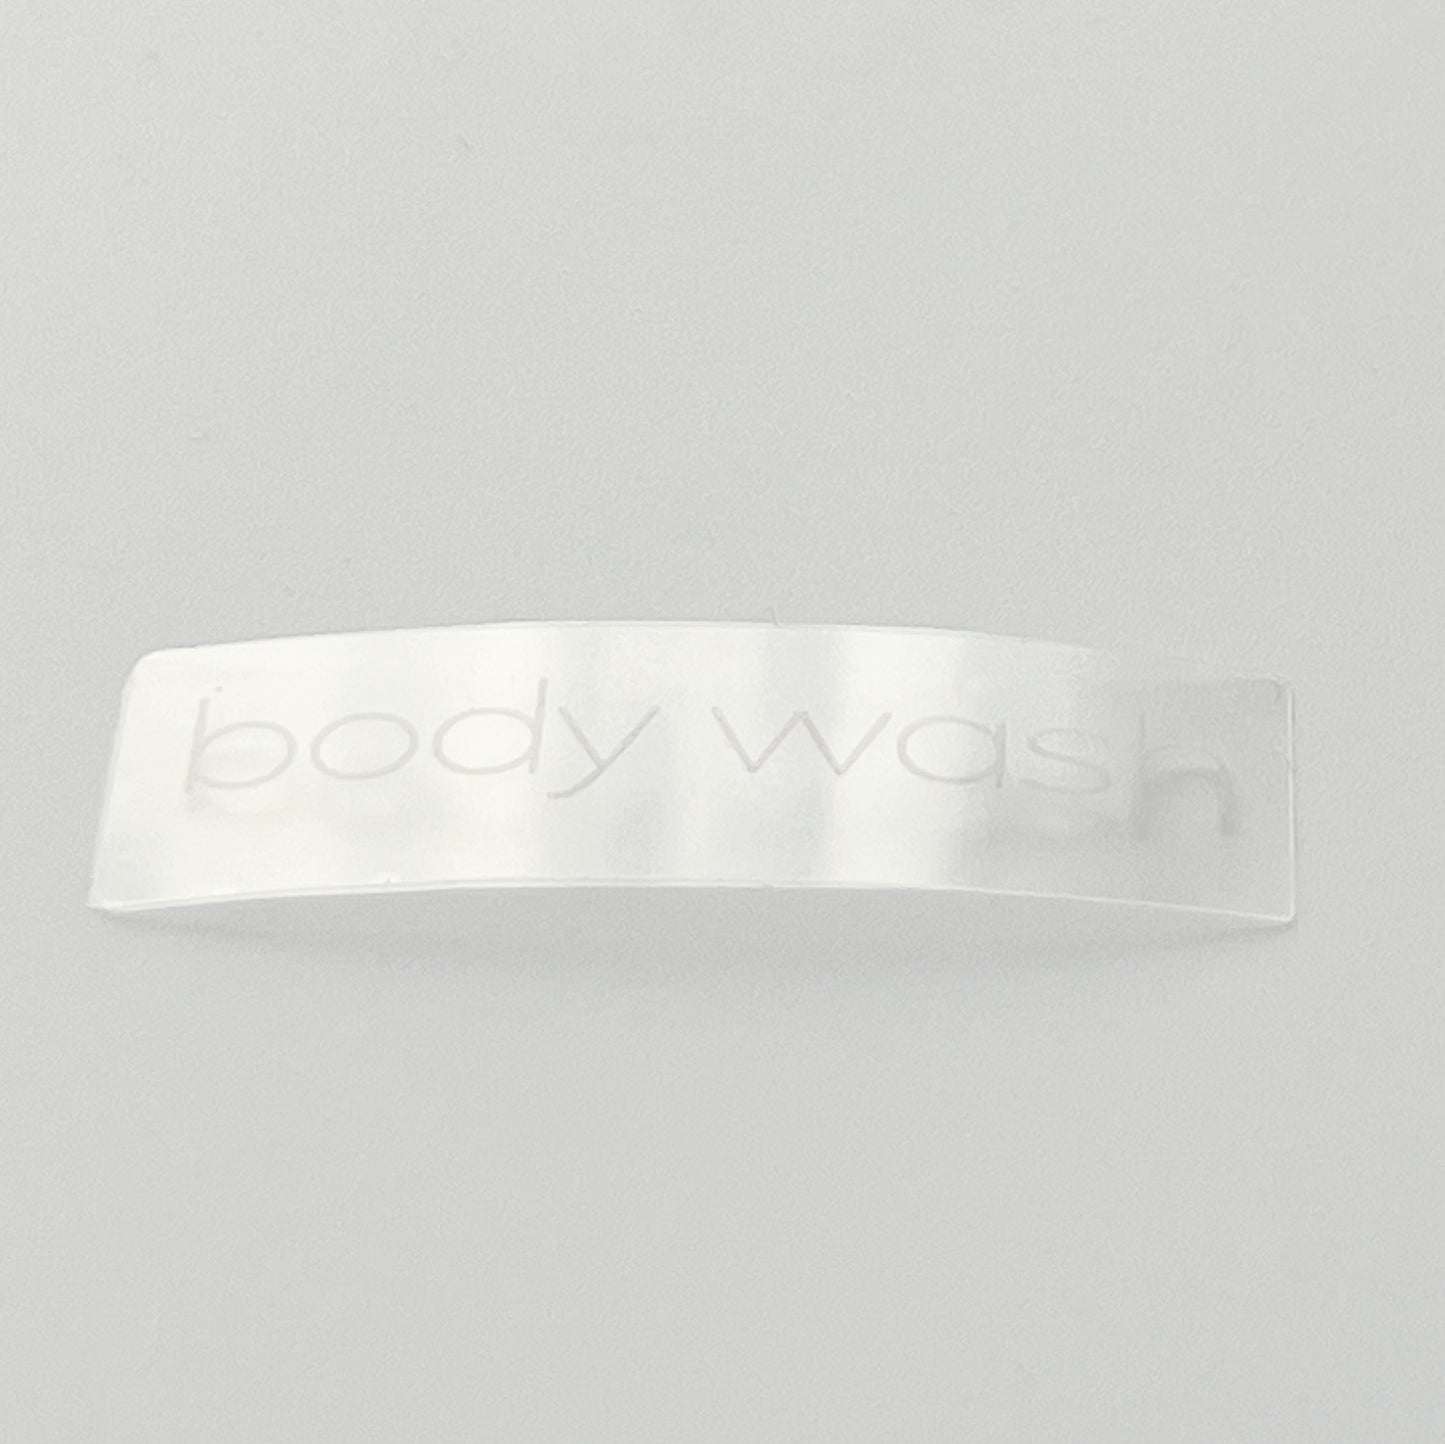 Body Wash | Label